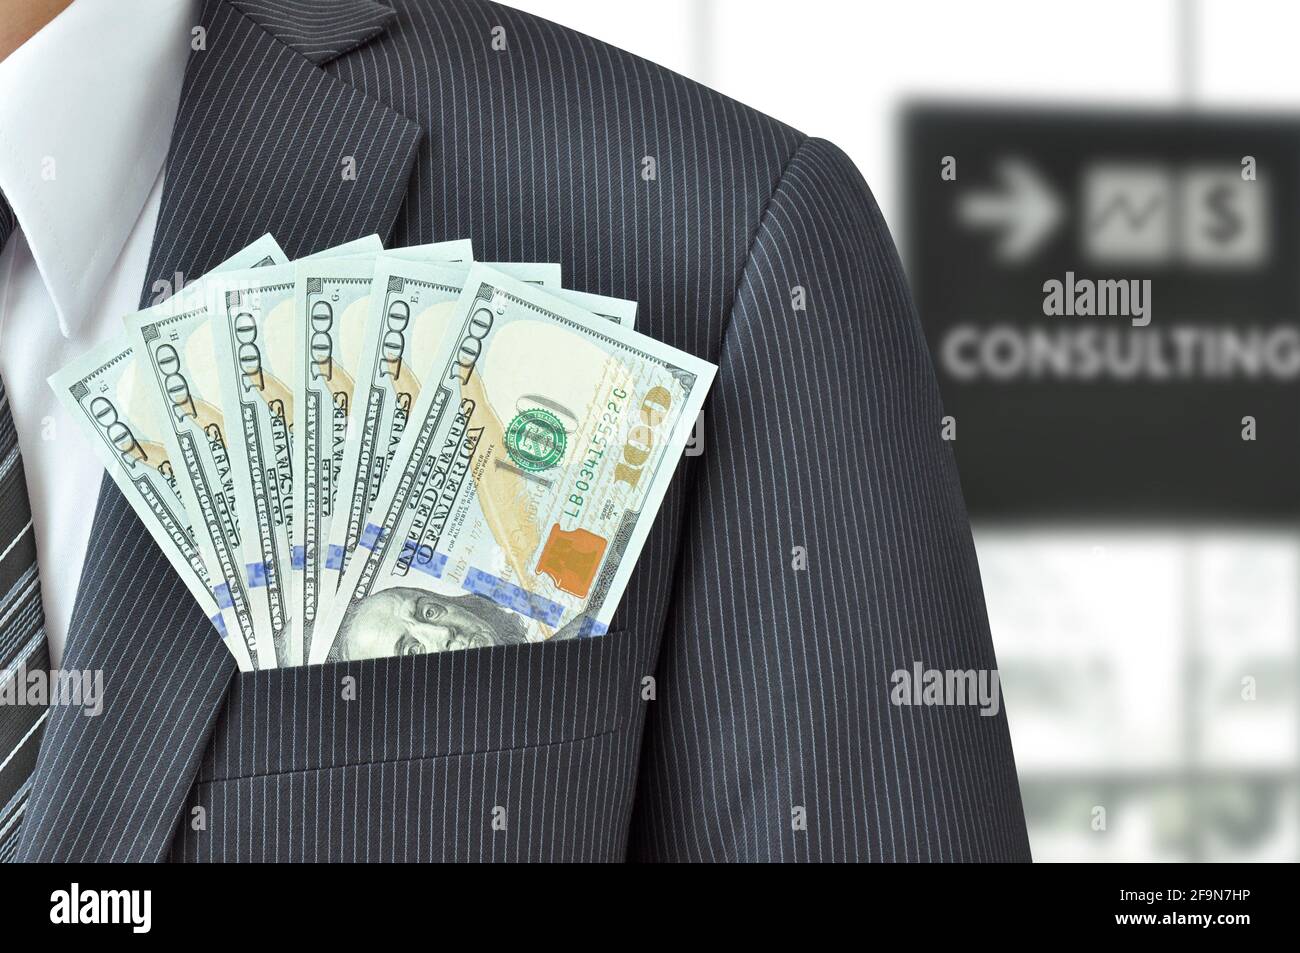 Denaro - dollaro USA (o USD) banconote in businessman suit pocket - concetto di consulenza finanziaria Foto Stock